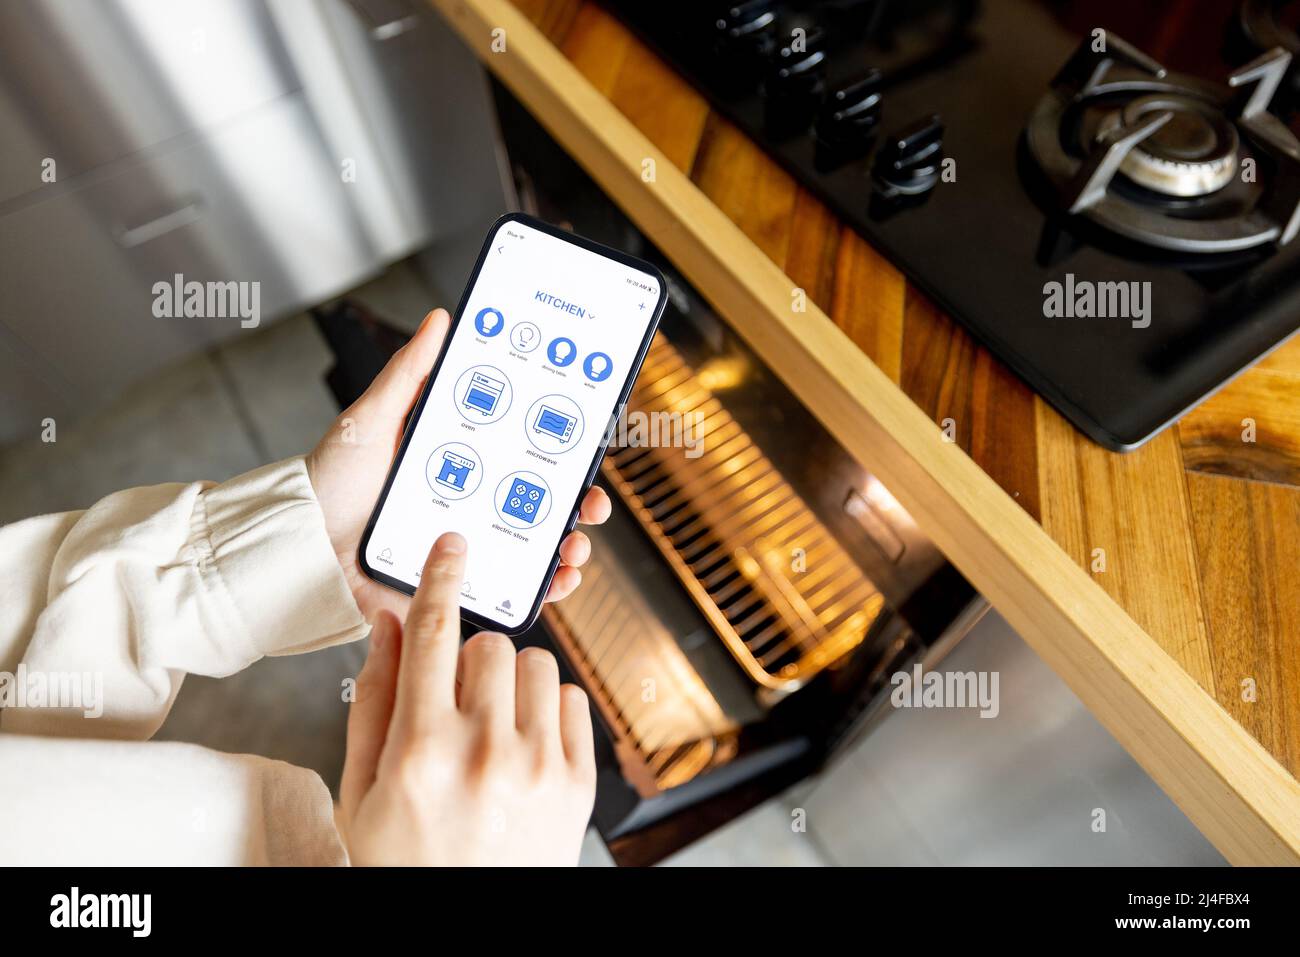 Contrôler les appareils de cuisine avec un smartphone Banque D'Images